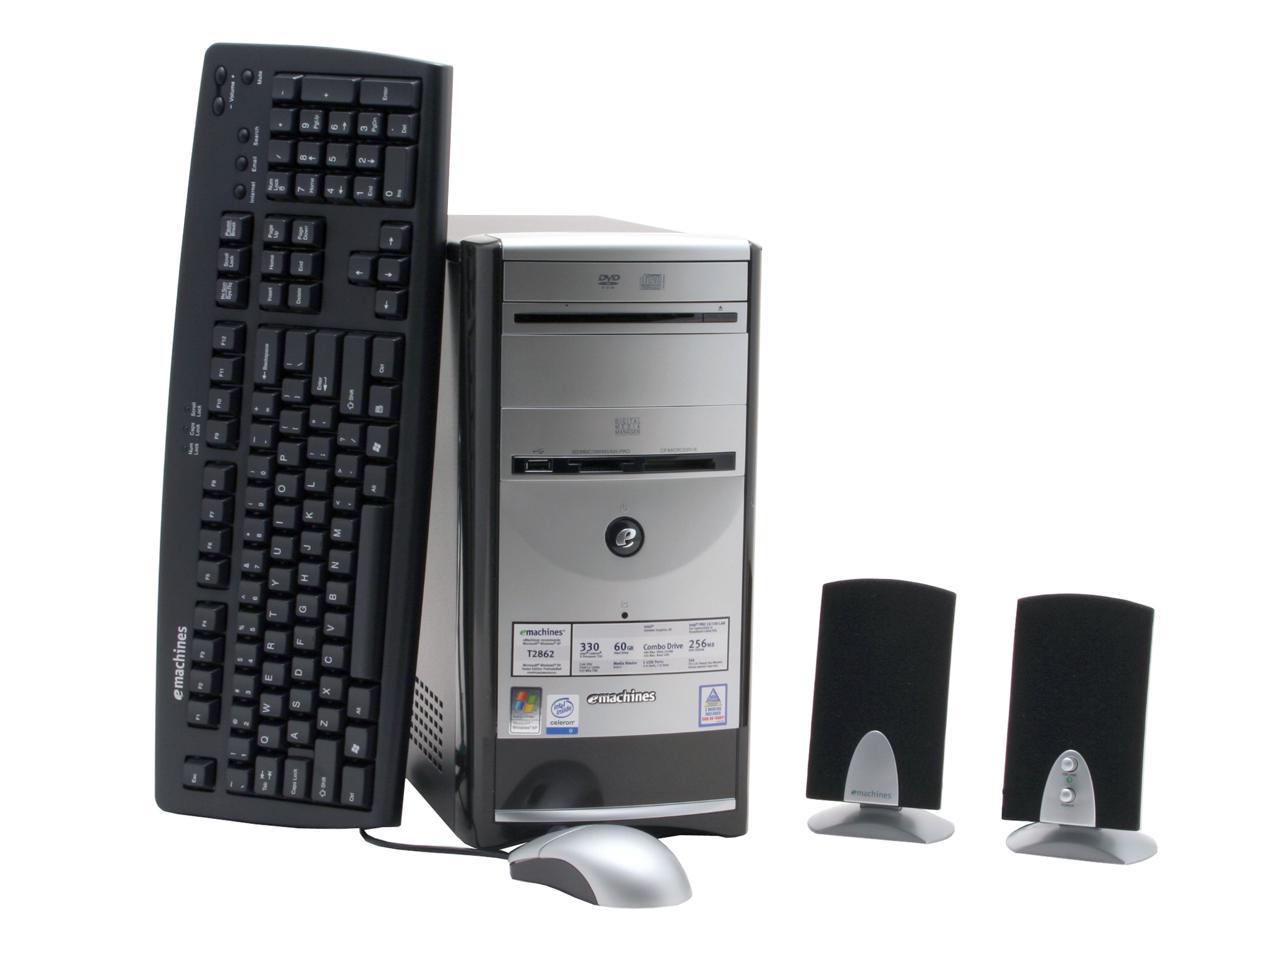 emachine desktops computers